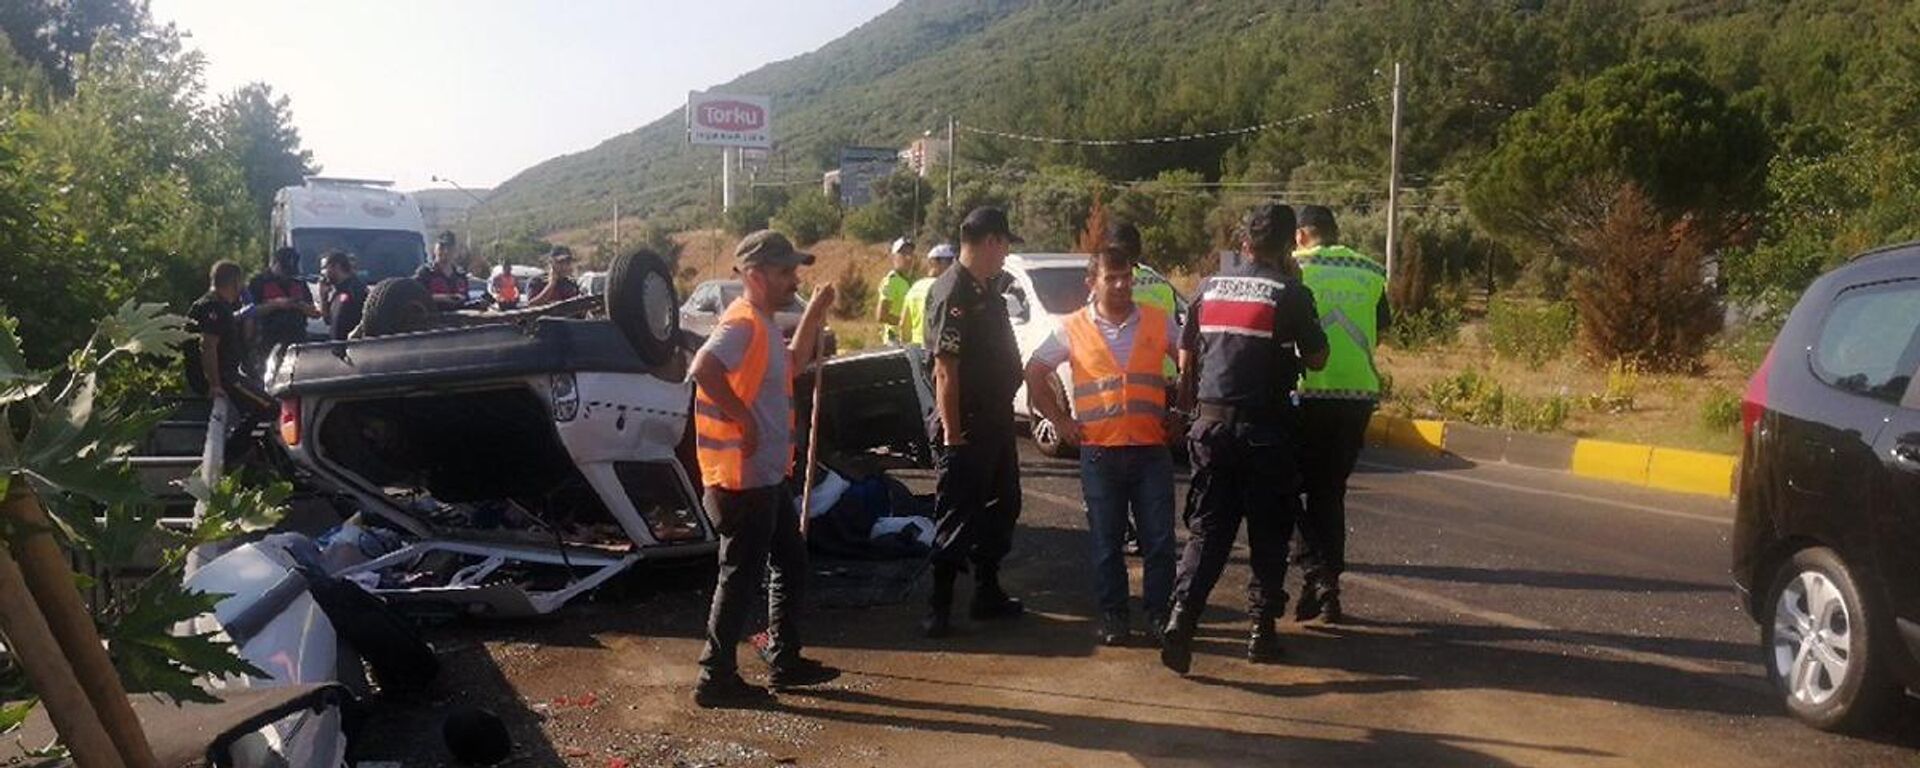 Muğla’da Menteşe-Ula karayolu Gülağzı kavşağında meydana gelen zincirleme trafik kazasında 2 kişi hayatını kaybetti, 4 kişi yaralandı. - Sputnik Türkiye, 1920, 08.07.2022